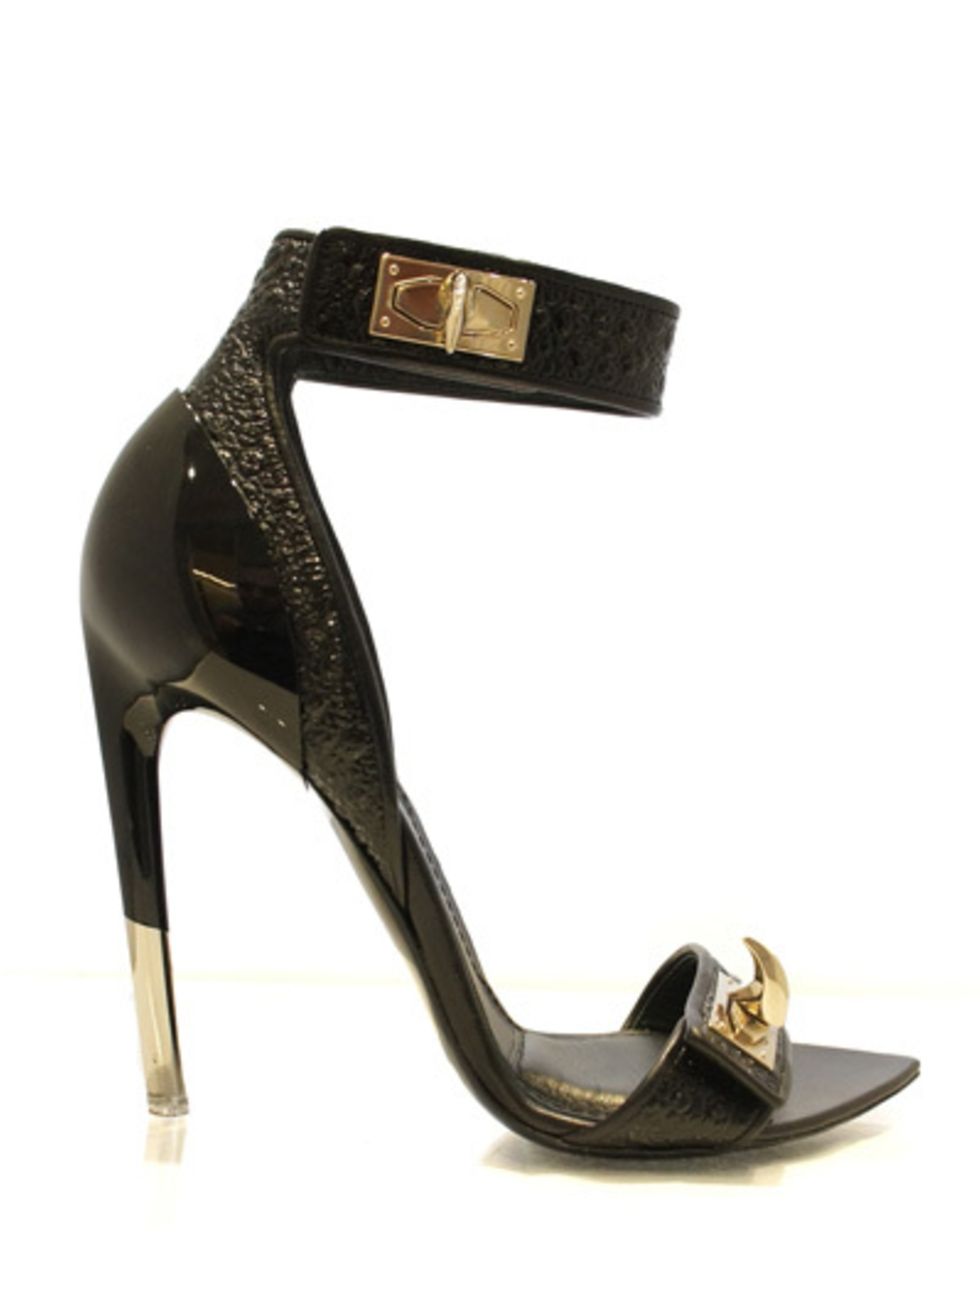 Brown, High heels, Tan, Beige, Sandal, Metal, Material property, Basic pump, Foot, Leather, 